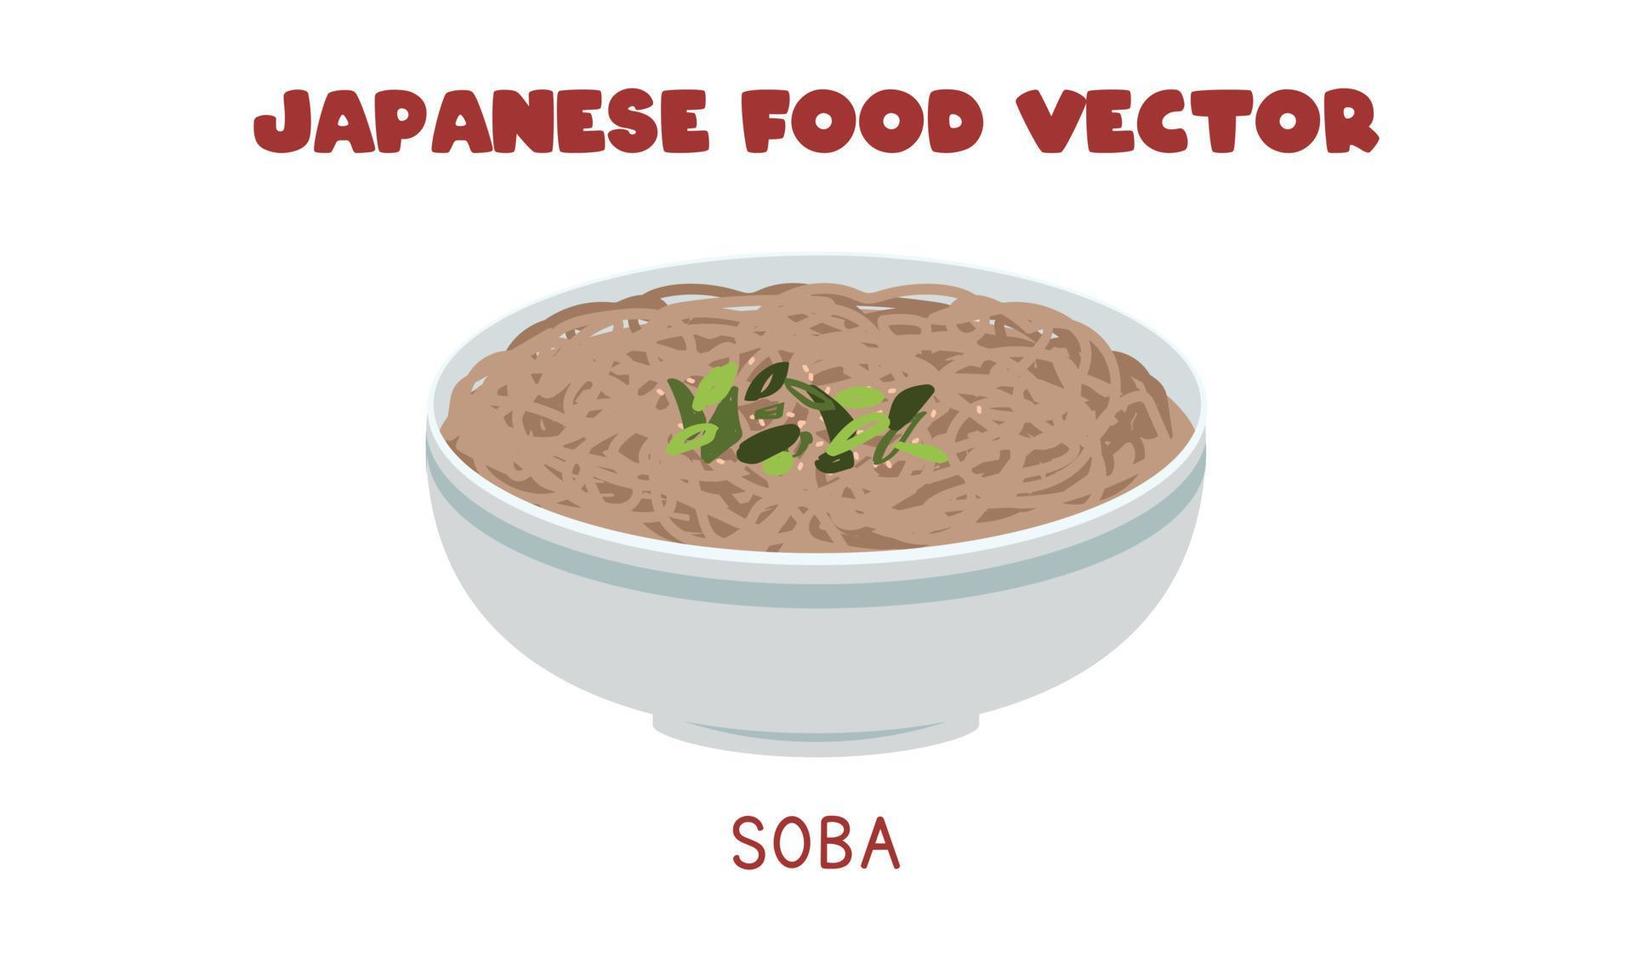 flache vektordesignillustration der japanischen soba-nudelsuppenschüssel, clipart-karikaturart. asiatisches Essen. japanische Küche. japanisches Essen vektor